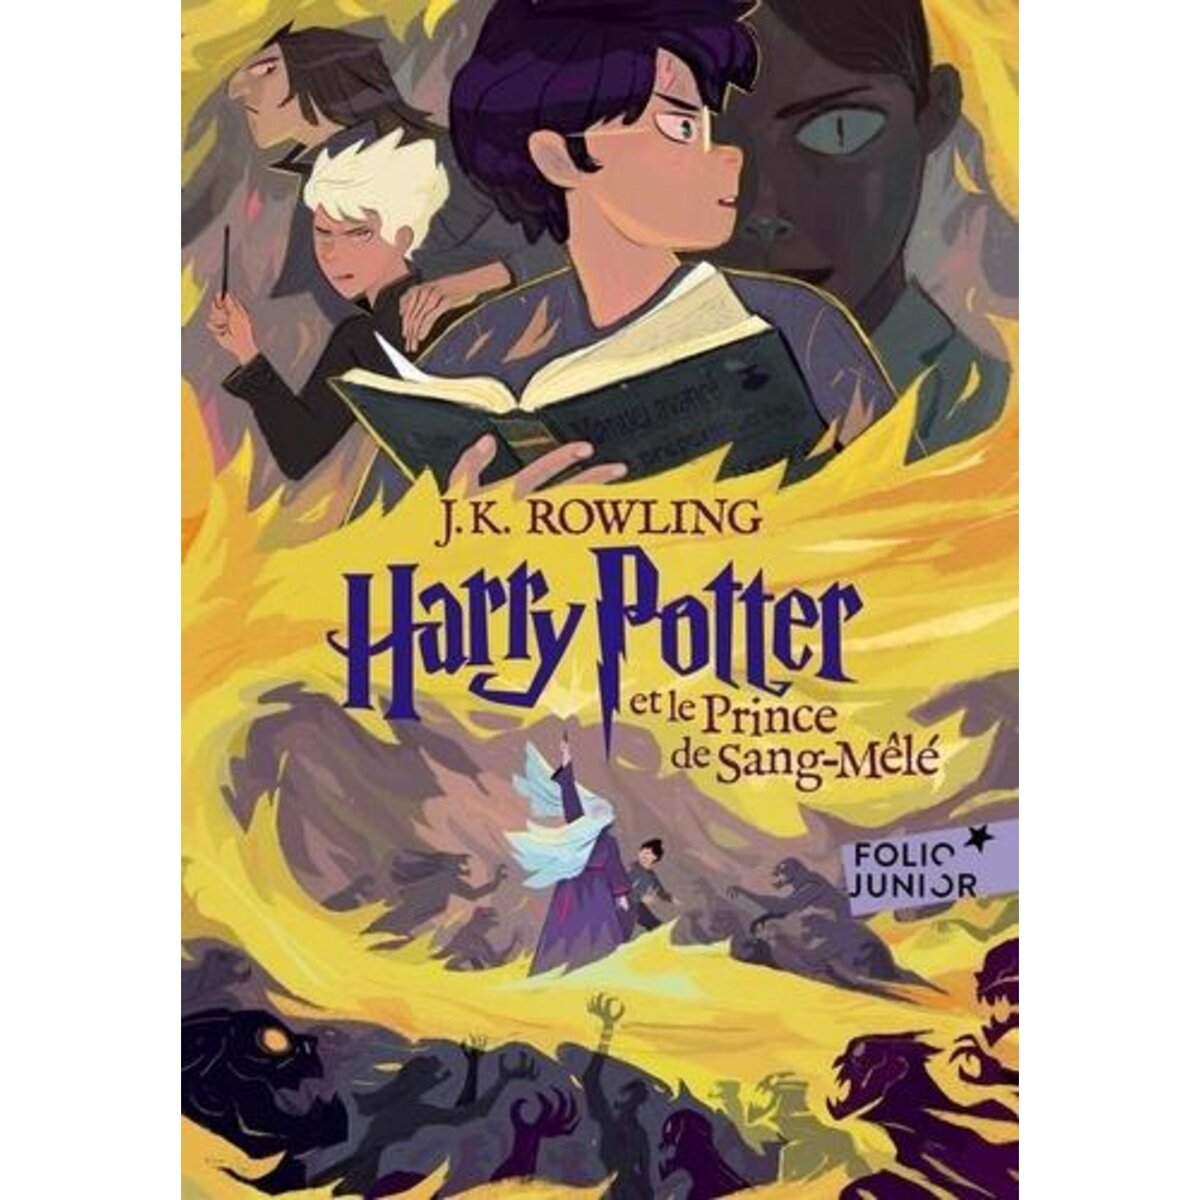  HARRY POTTER TOME 6 : HARRY POTTER ET LE PRINCE DE SANG-MELE, Rowling J.K.